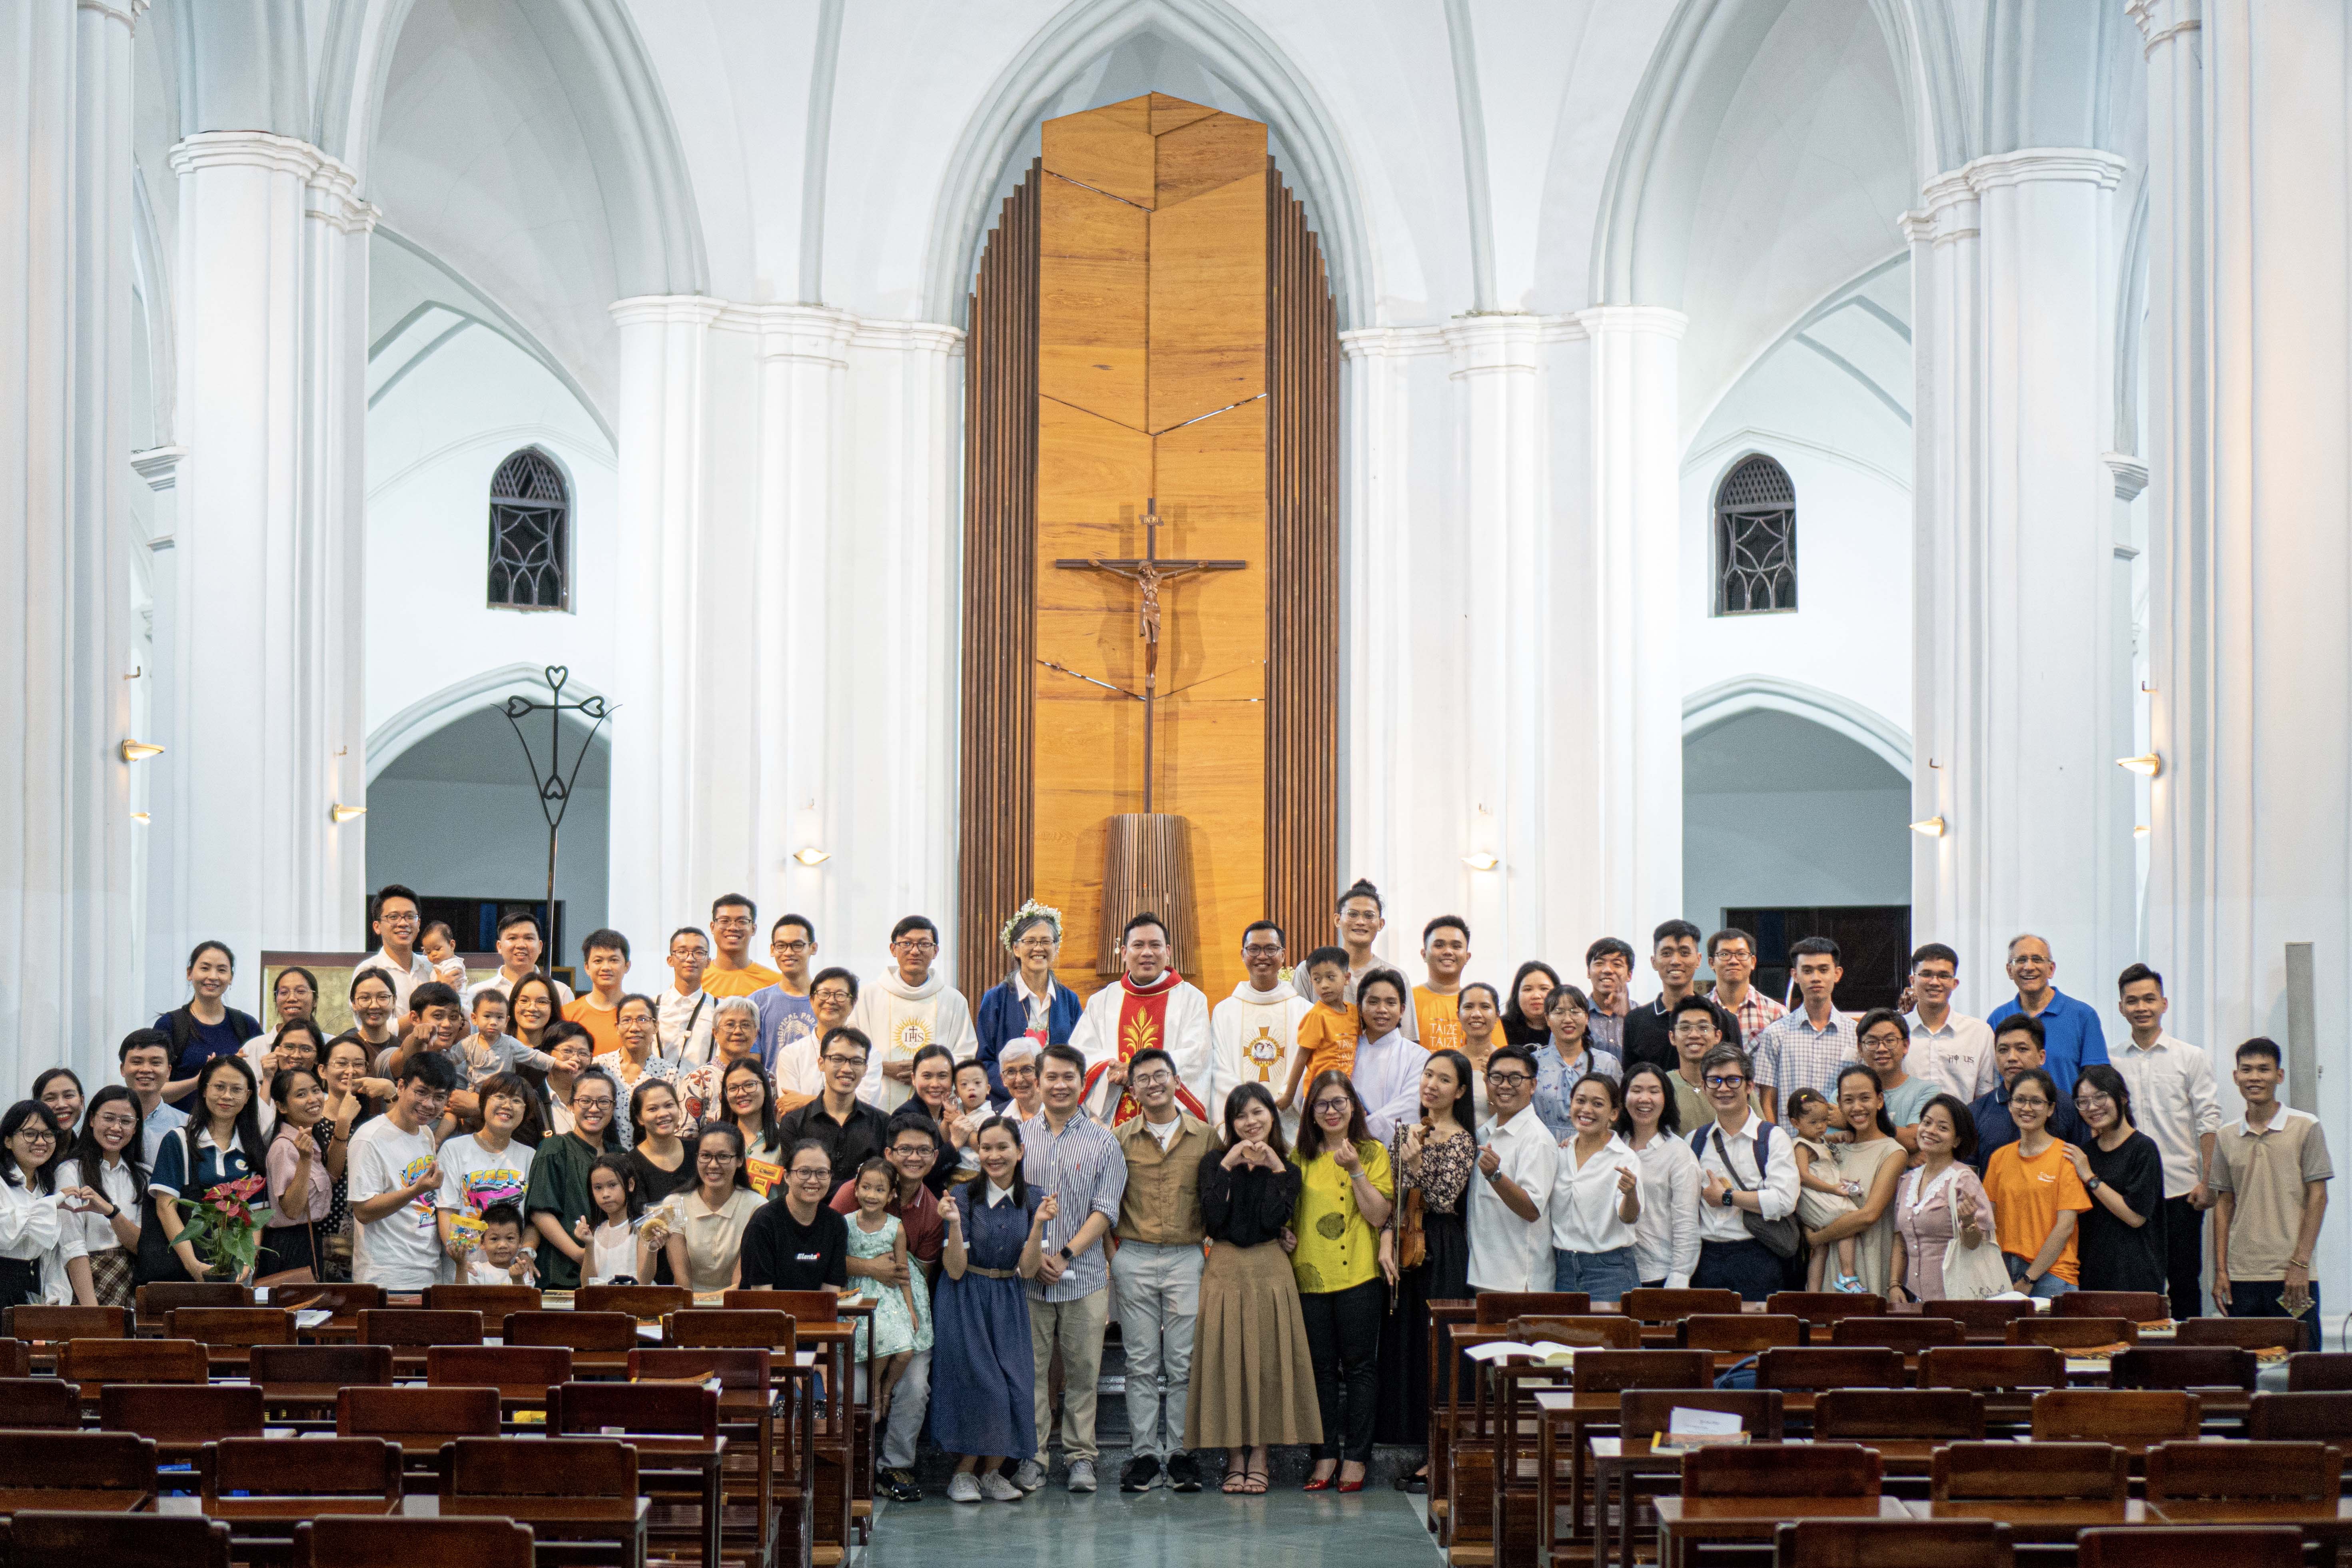 "Hãy nên Thánh trong ơn gọi của cuộc đời mình" – Kỷ niệm 15 năm hình thành Nhóm Cầu nguyện Mạctynho - Taizé Việt Nam